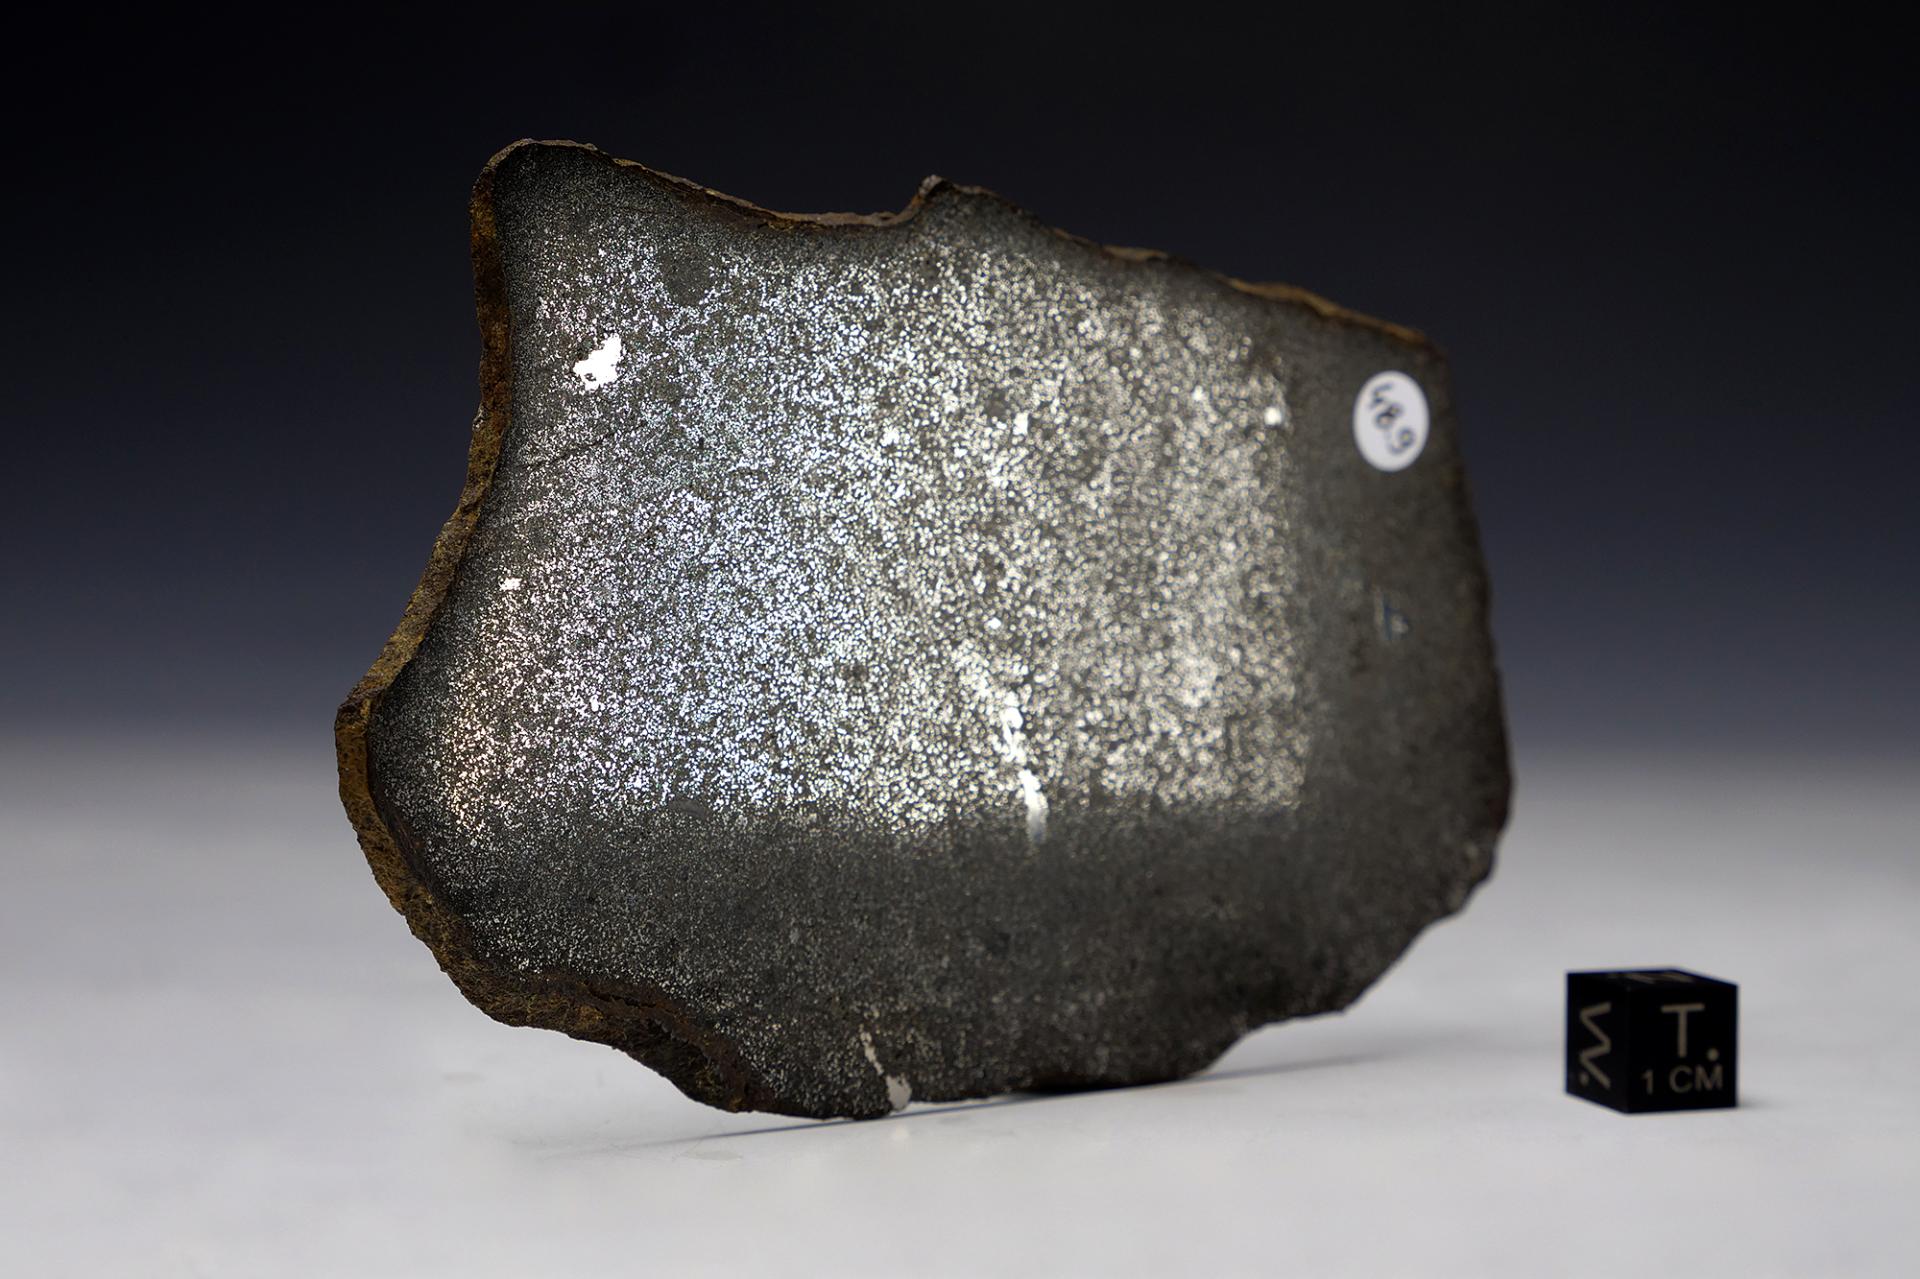 ART&MET Meteorites Collection - Zapraszamy do podróżowania razem z nami po kosmicznym świecie meteorytów, który jest niezwykły, fascynujący i pełen przygód.